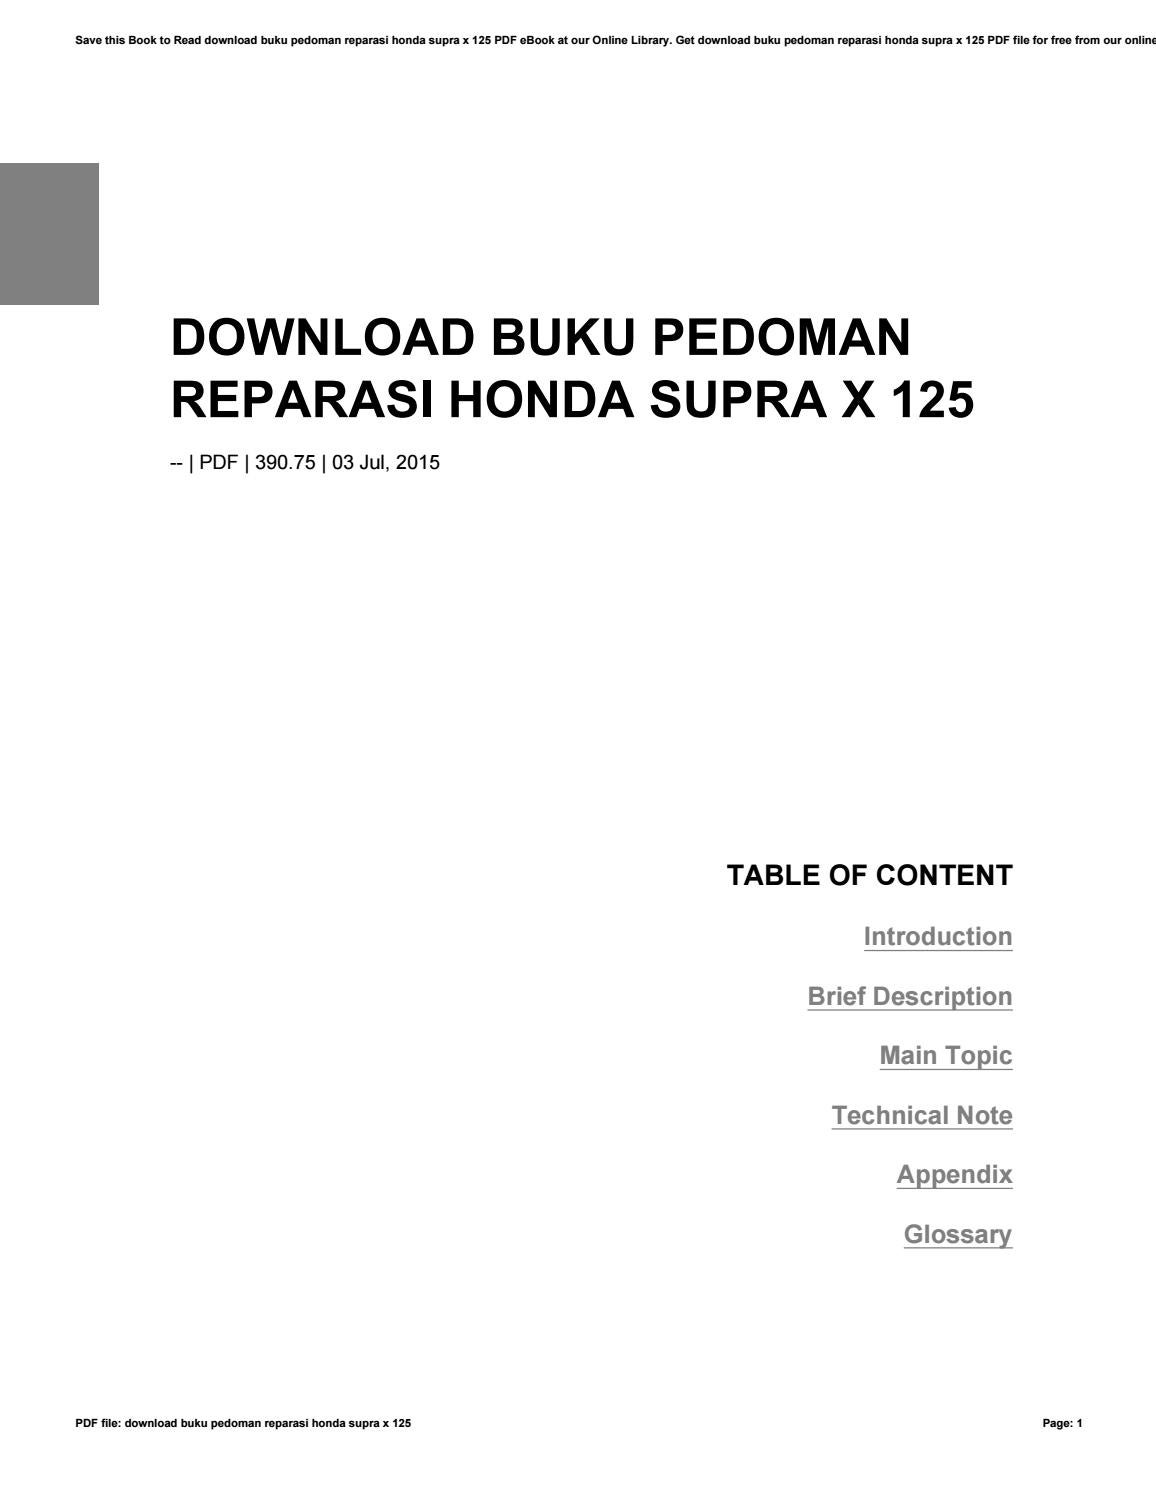 Detail Buku Panduan Reparasi Honda Nomer 28